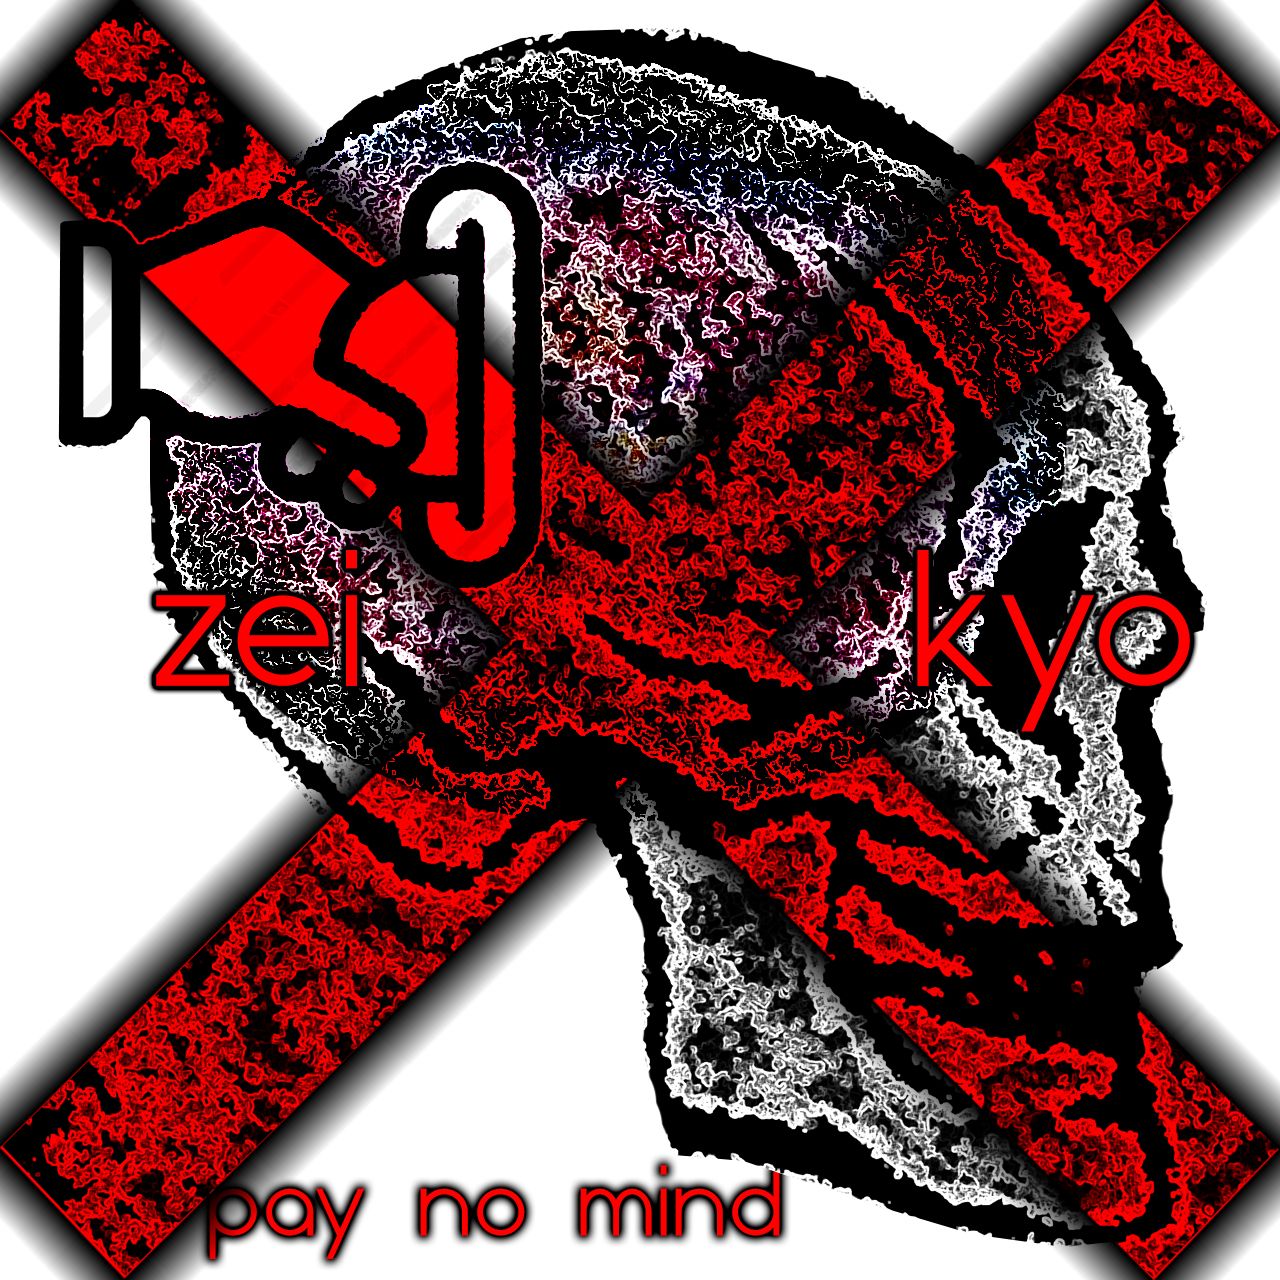 Télécharger pay no mind (ft Kyo)(prod. Zei x Prxd. Jay)